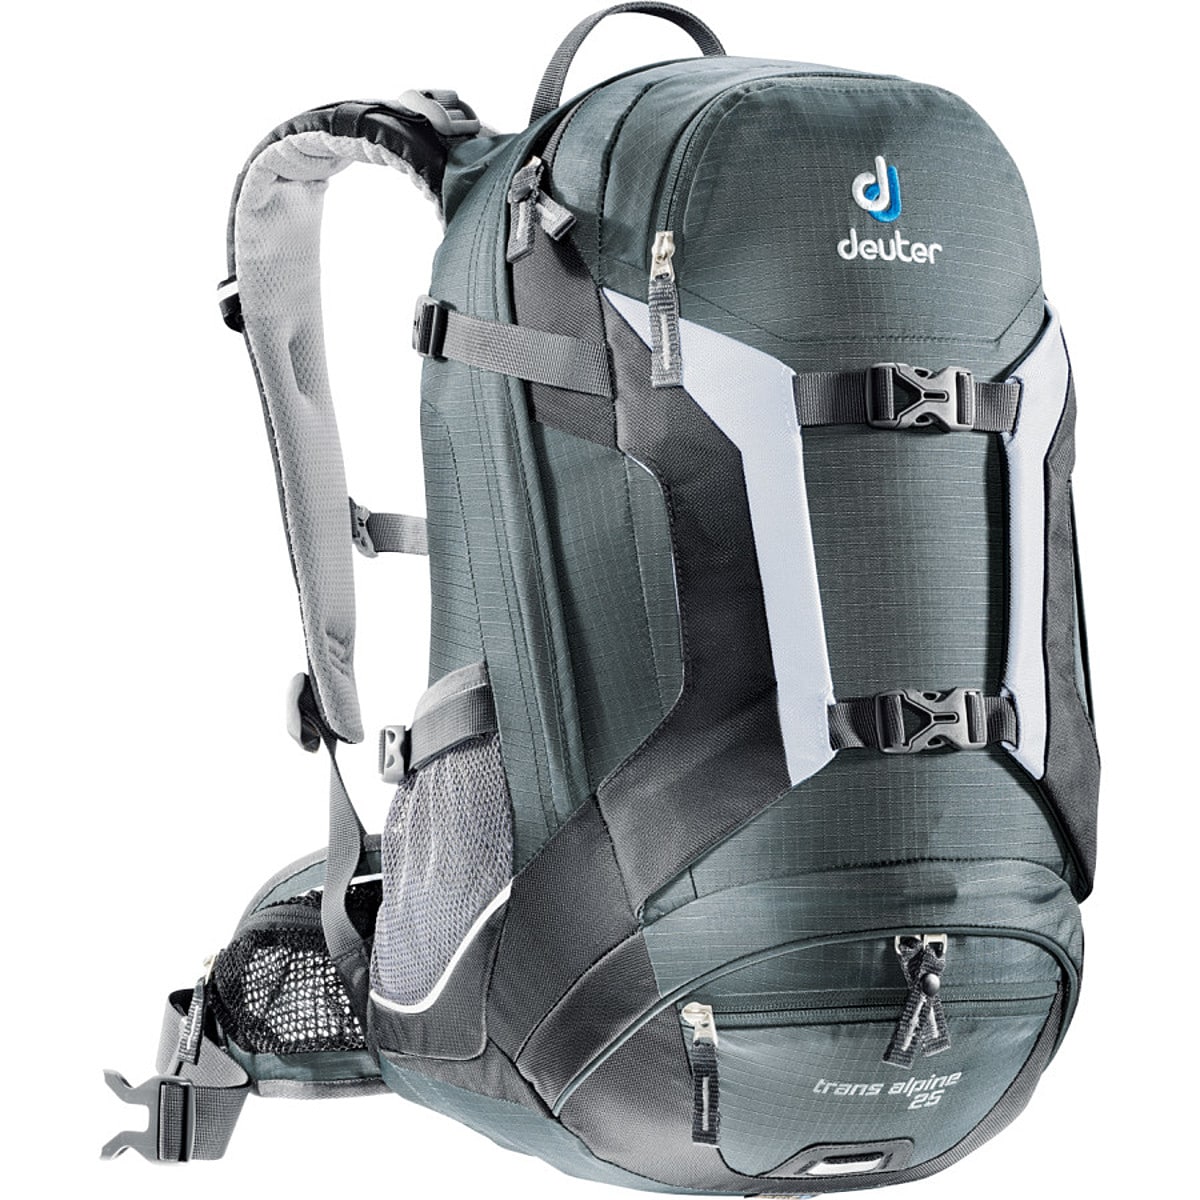 Deuter Trans Alpine 25 Backpack - 1530cu in - Hike & Camp